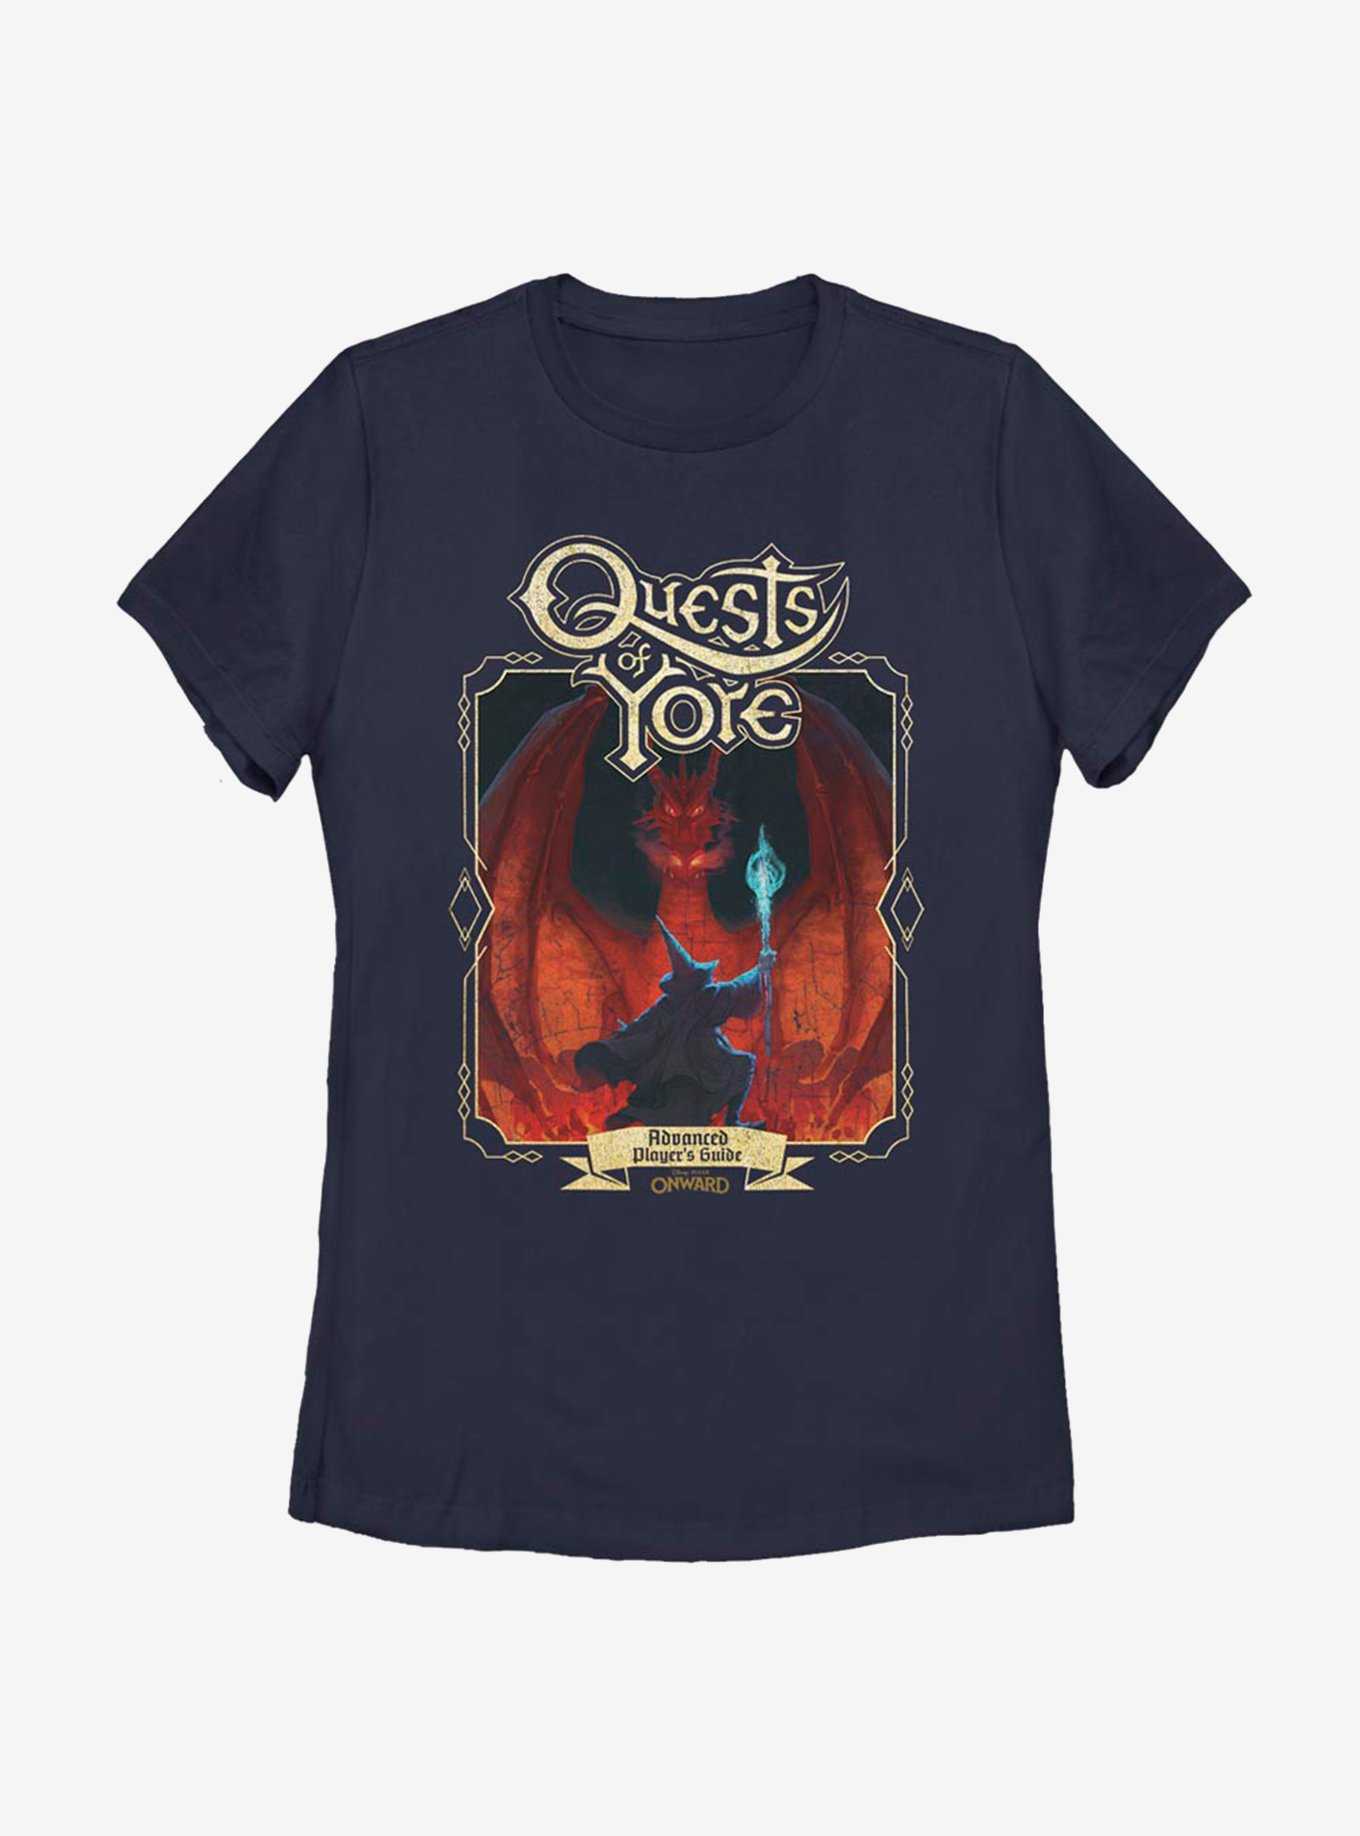 Disney Pixar Onward Quest Of Yore Cover Womens T-Shirt, , hi-res